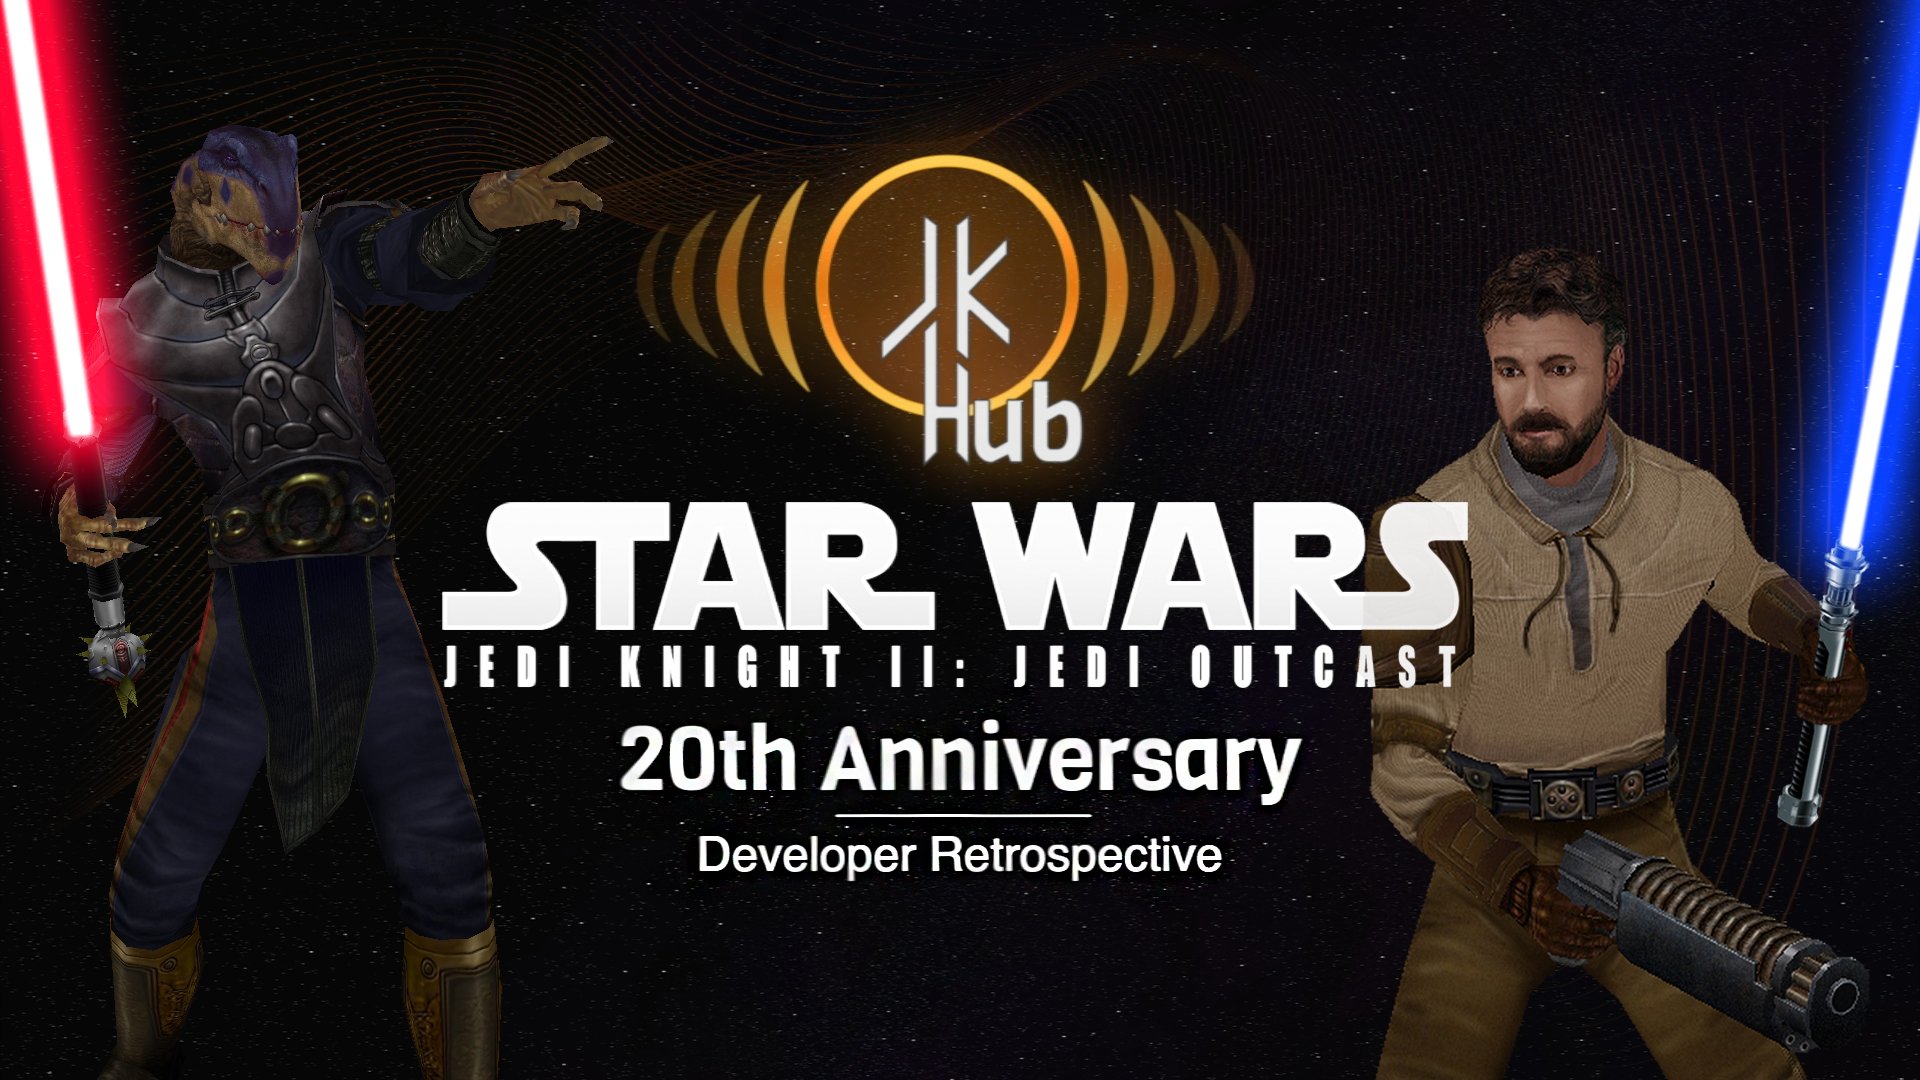 More information about "Jedi Outcast 20th Anniversary Developer Retrospective"